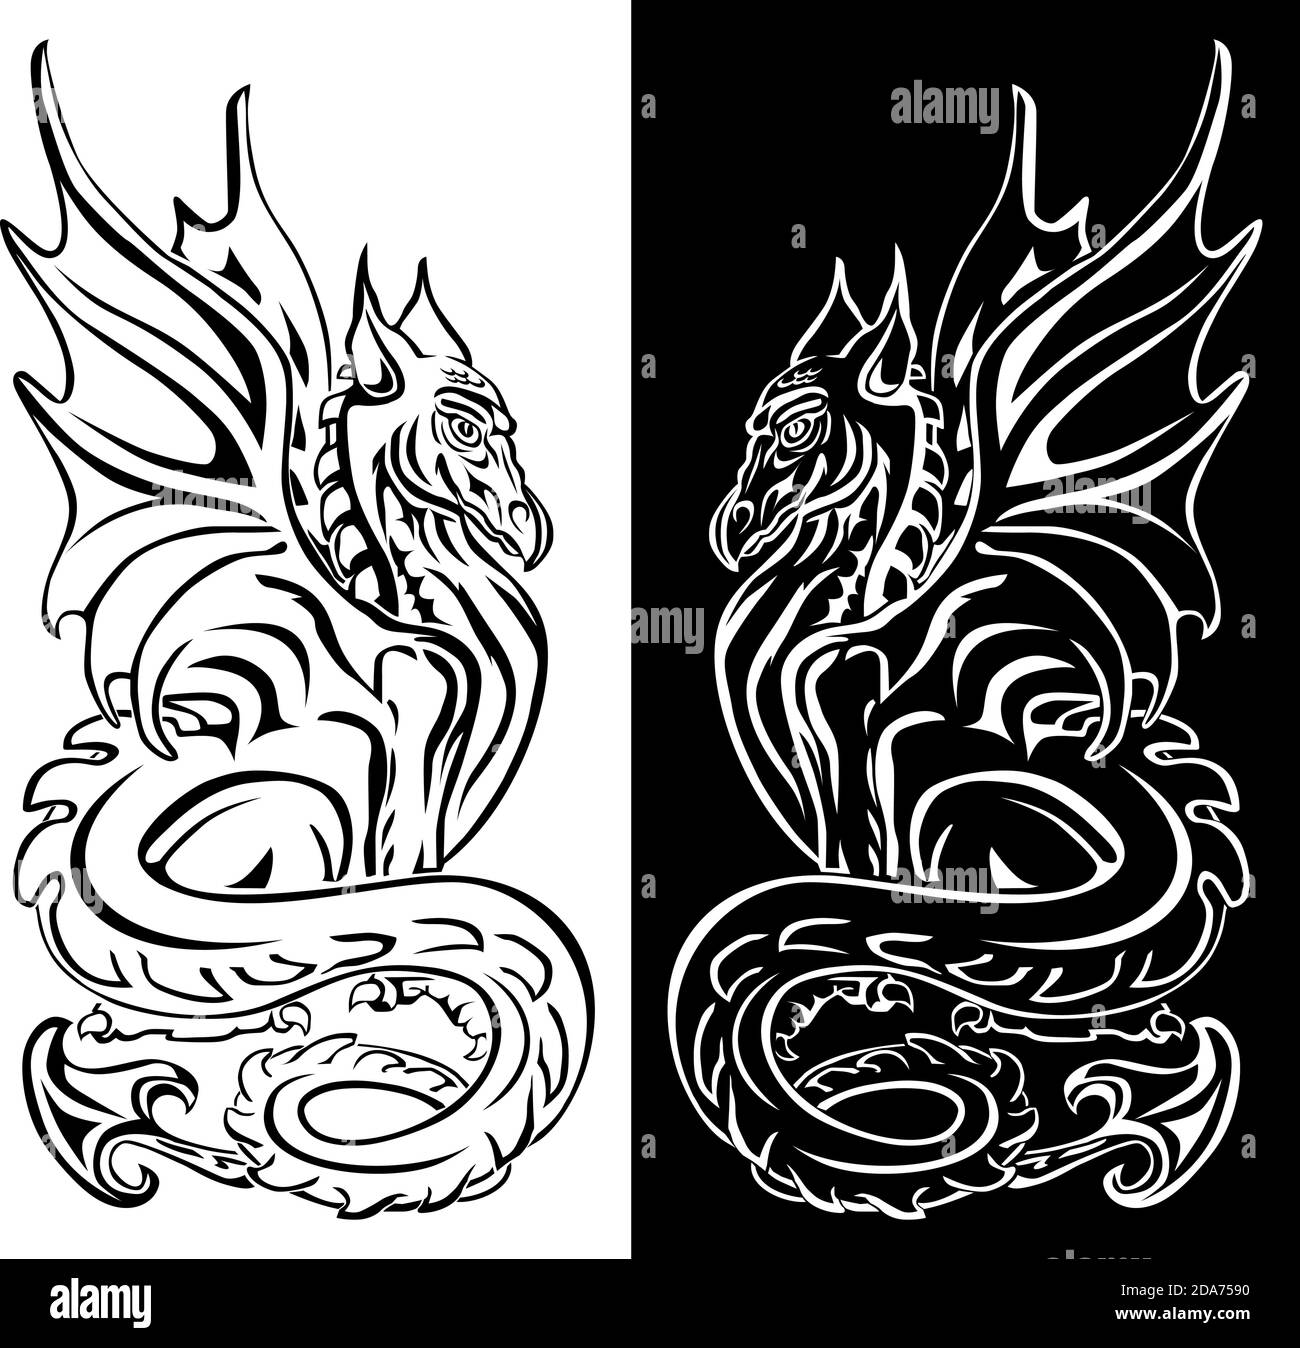 Art de ligne de dragon fantastique pour tatouages, t-shirt design, traitement de surface de verre. Illustration, vecteur Illustration de Vecteur